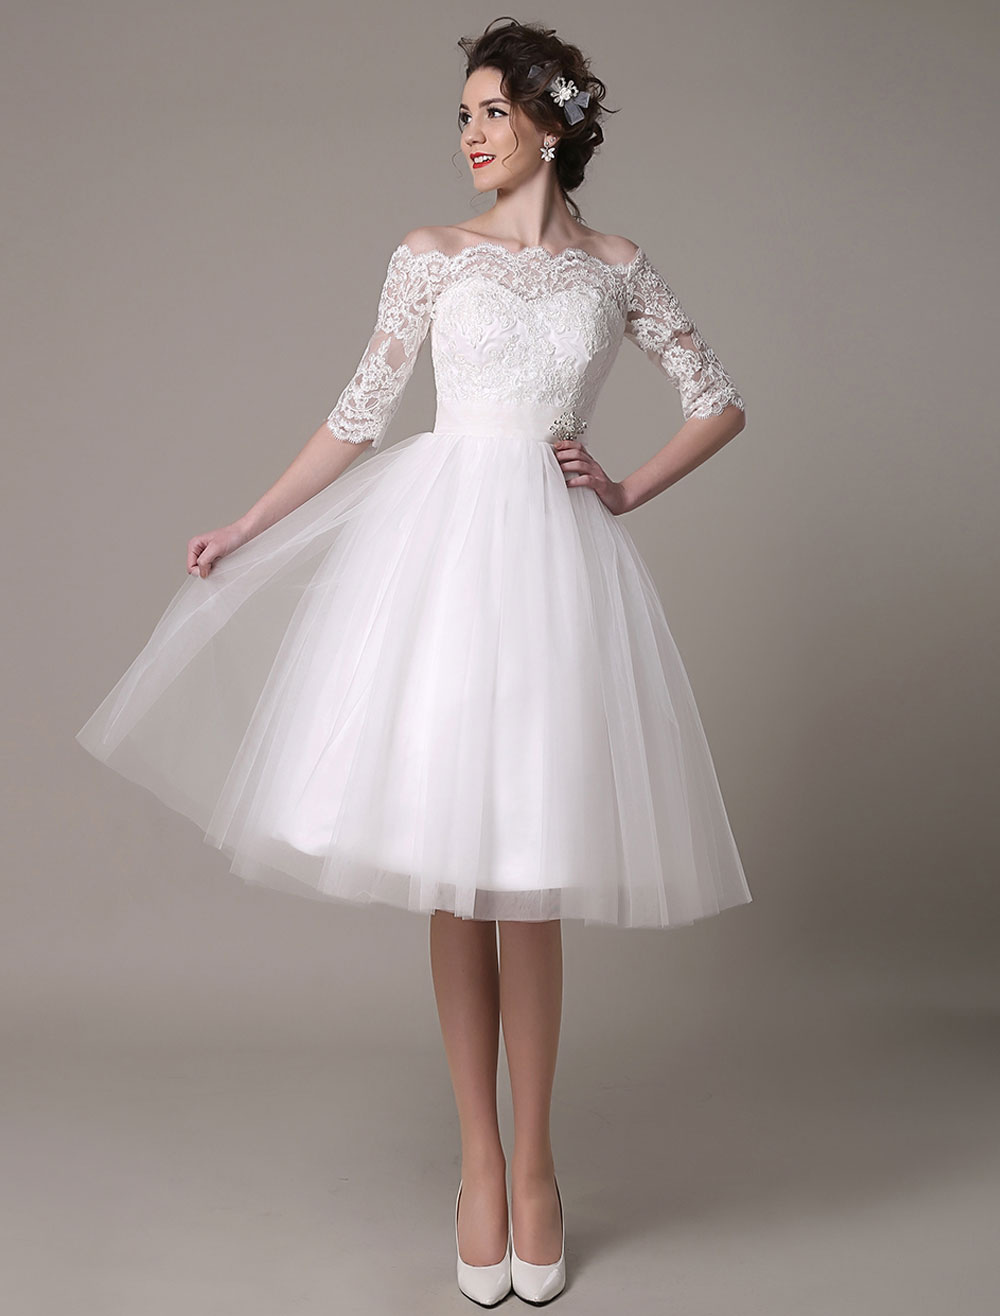 Lace Wedding Dresses 2021 short off the shoulder A Line Knee Length ...